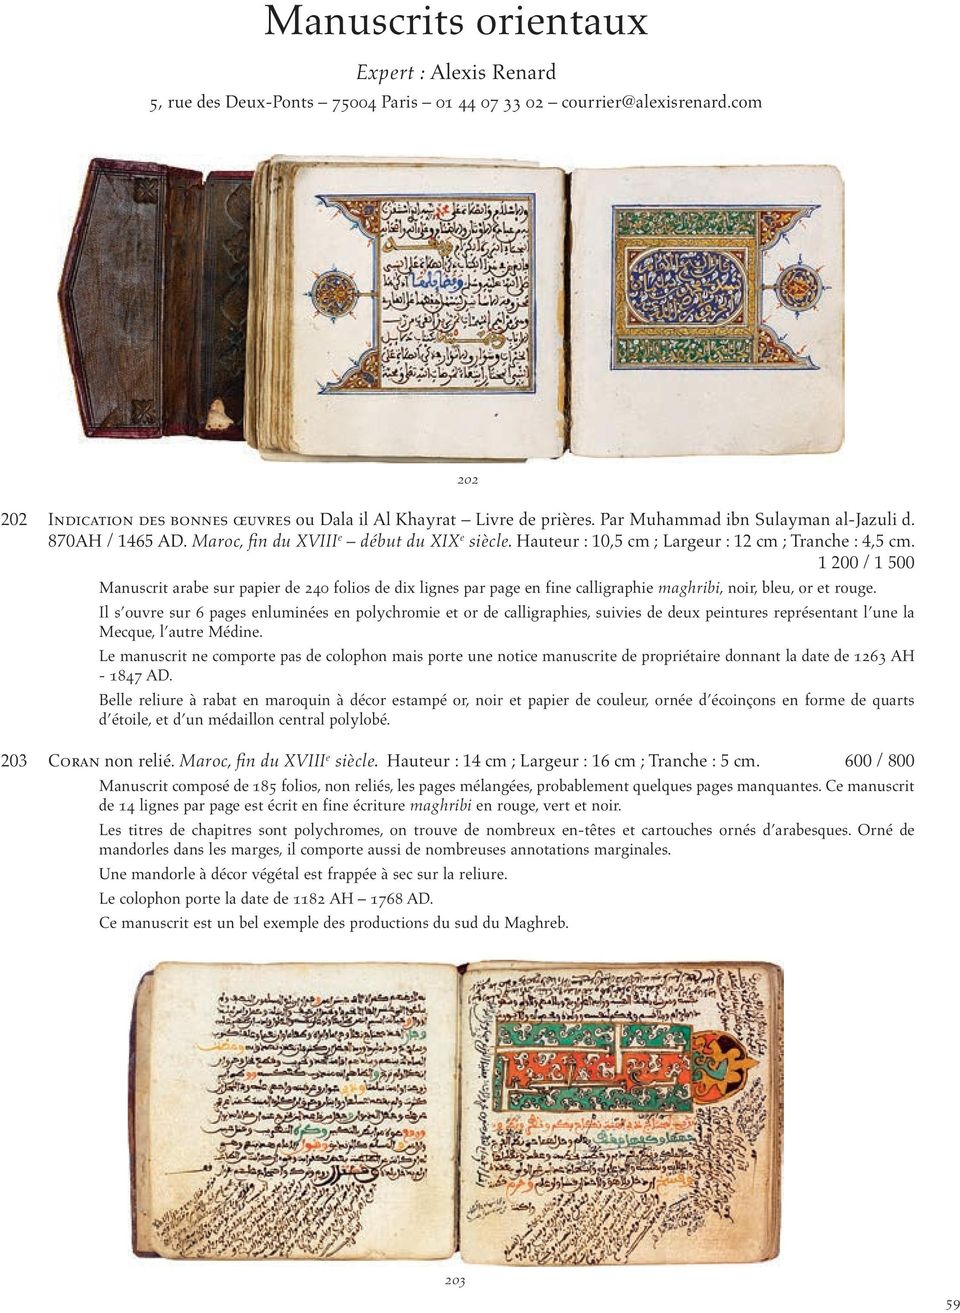 1 200 / 1 500 Manuscrit arabe sur papier de 240 folios de dix lignes par page en fine calligraphie maghribi, noir, bleu, or et rouge.